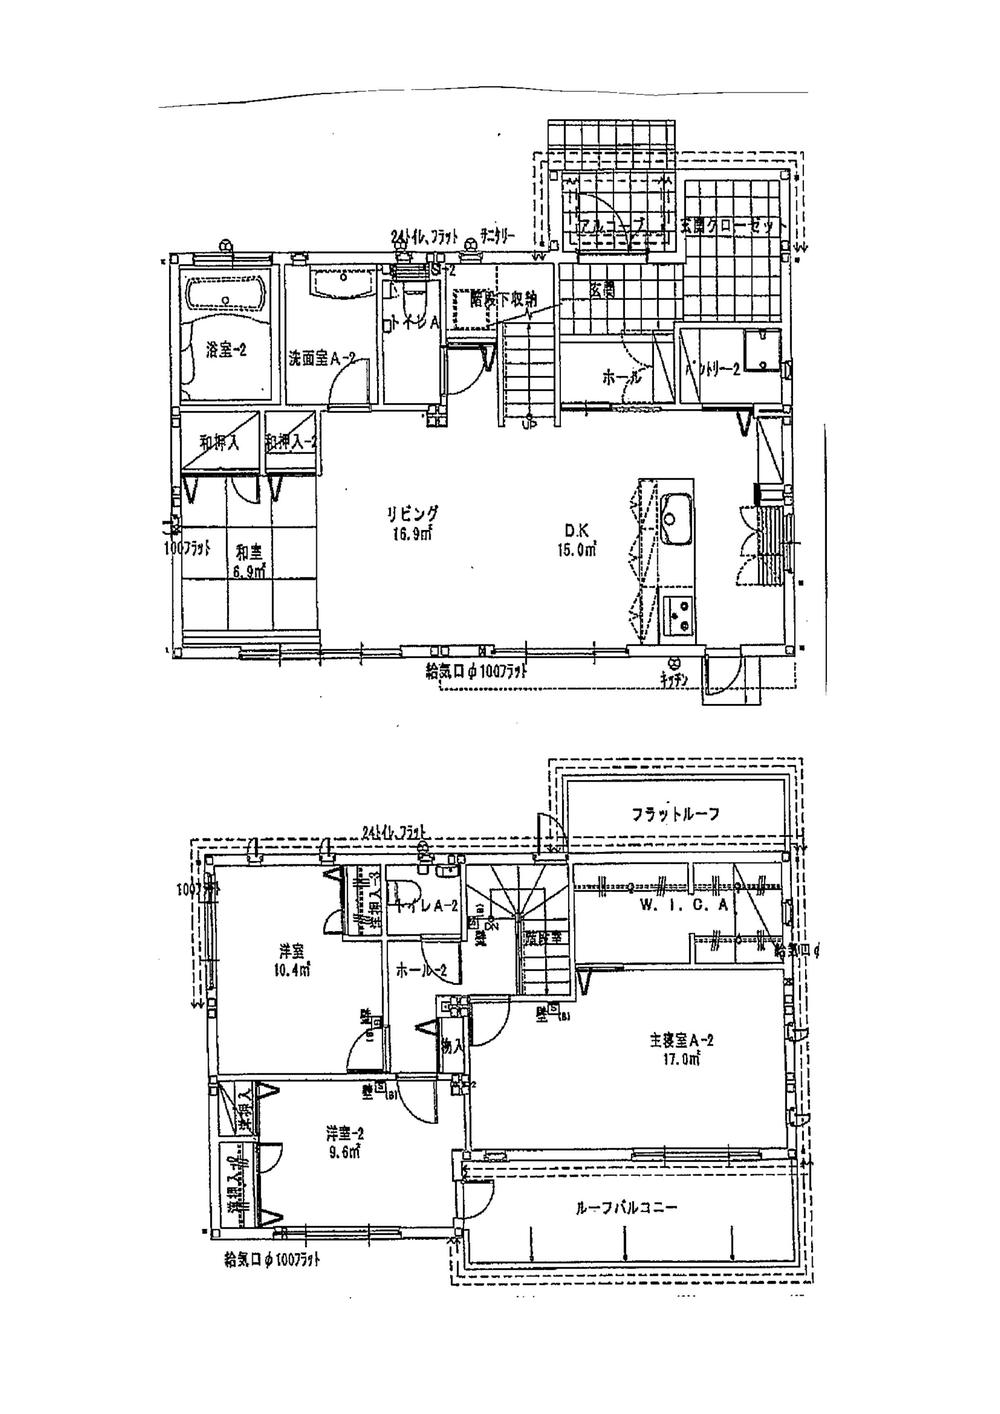 Floor plan. 36 million yen, 4LDK, Land area 203.7 sq m , Building area 125.81 sq m